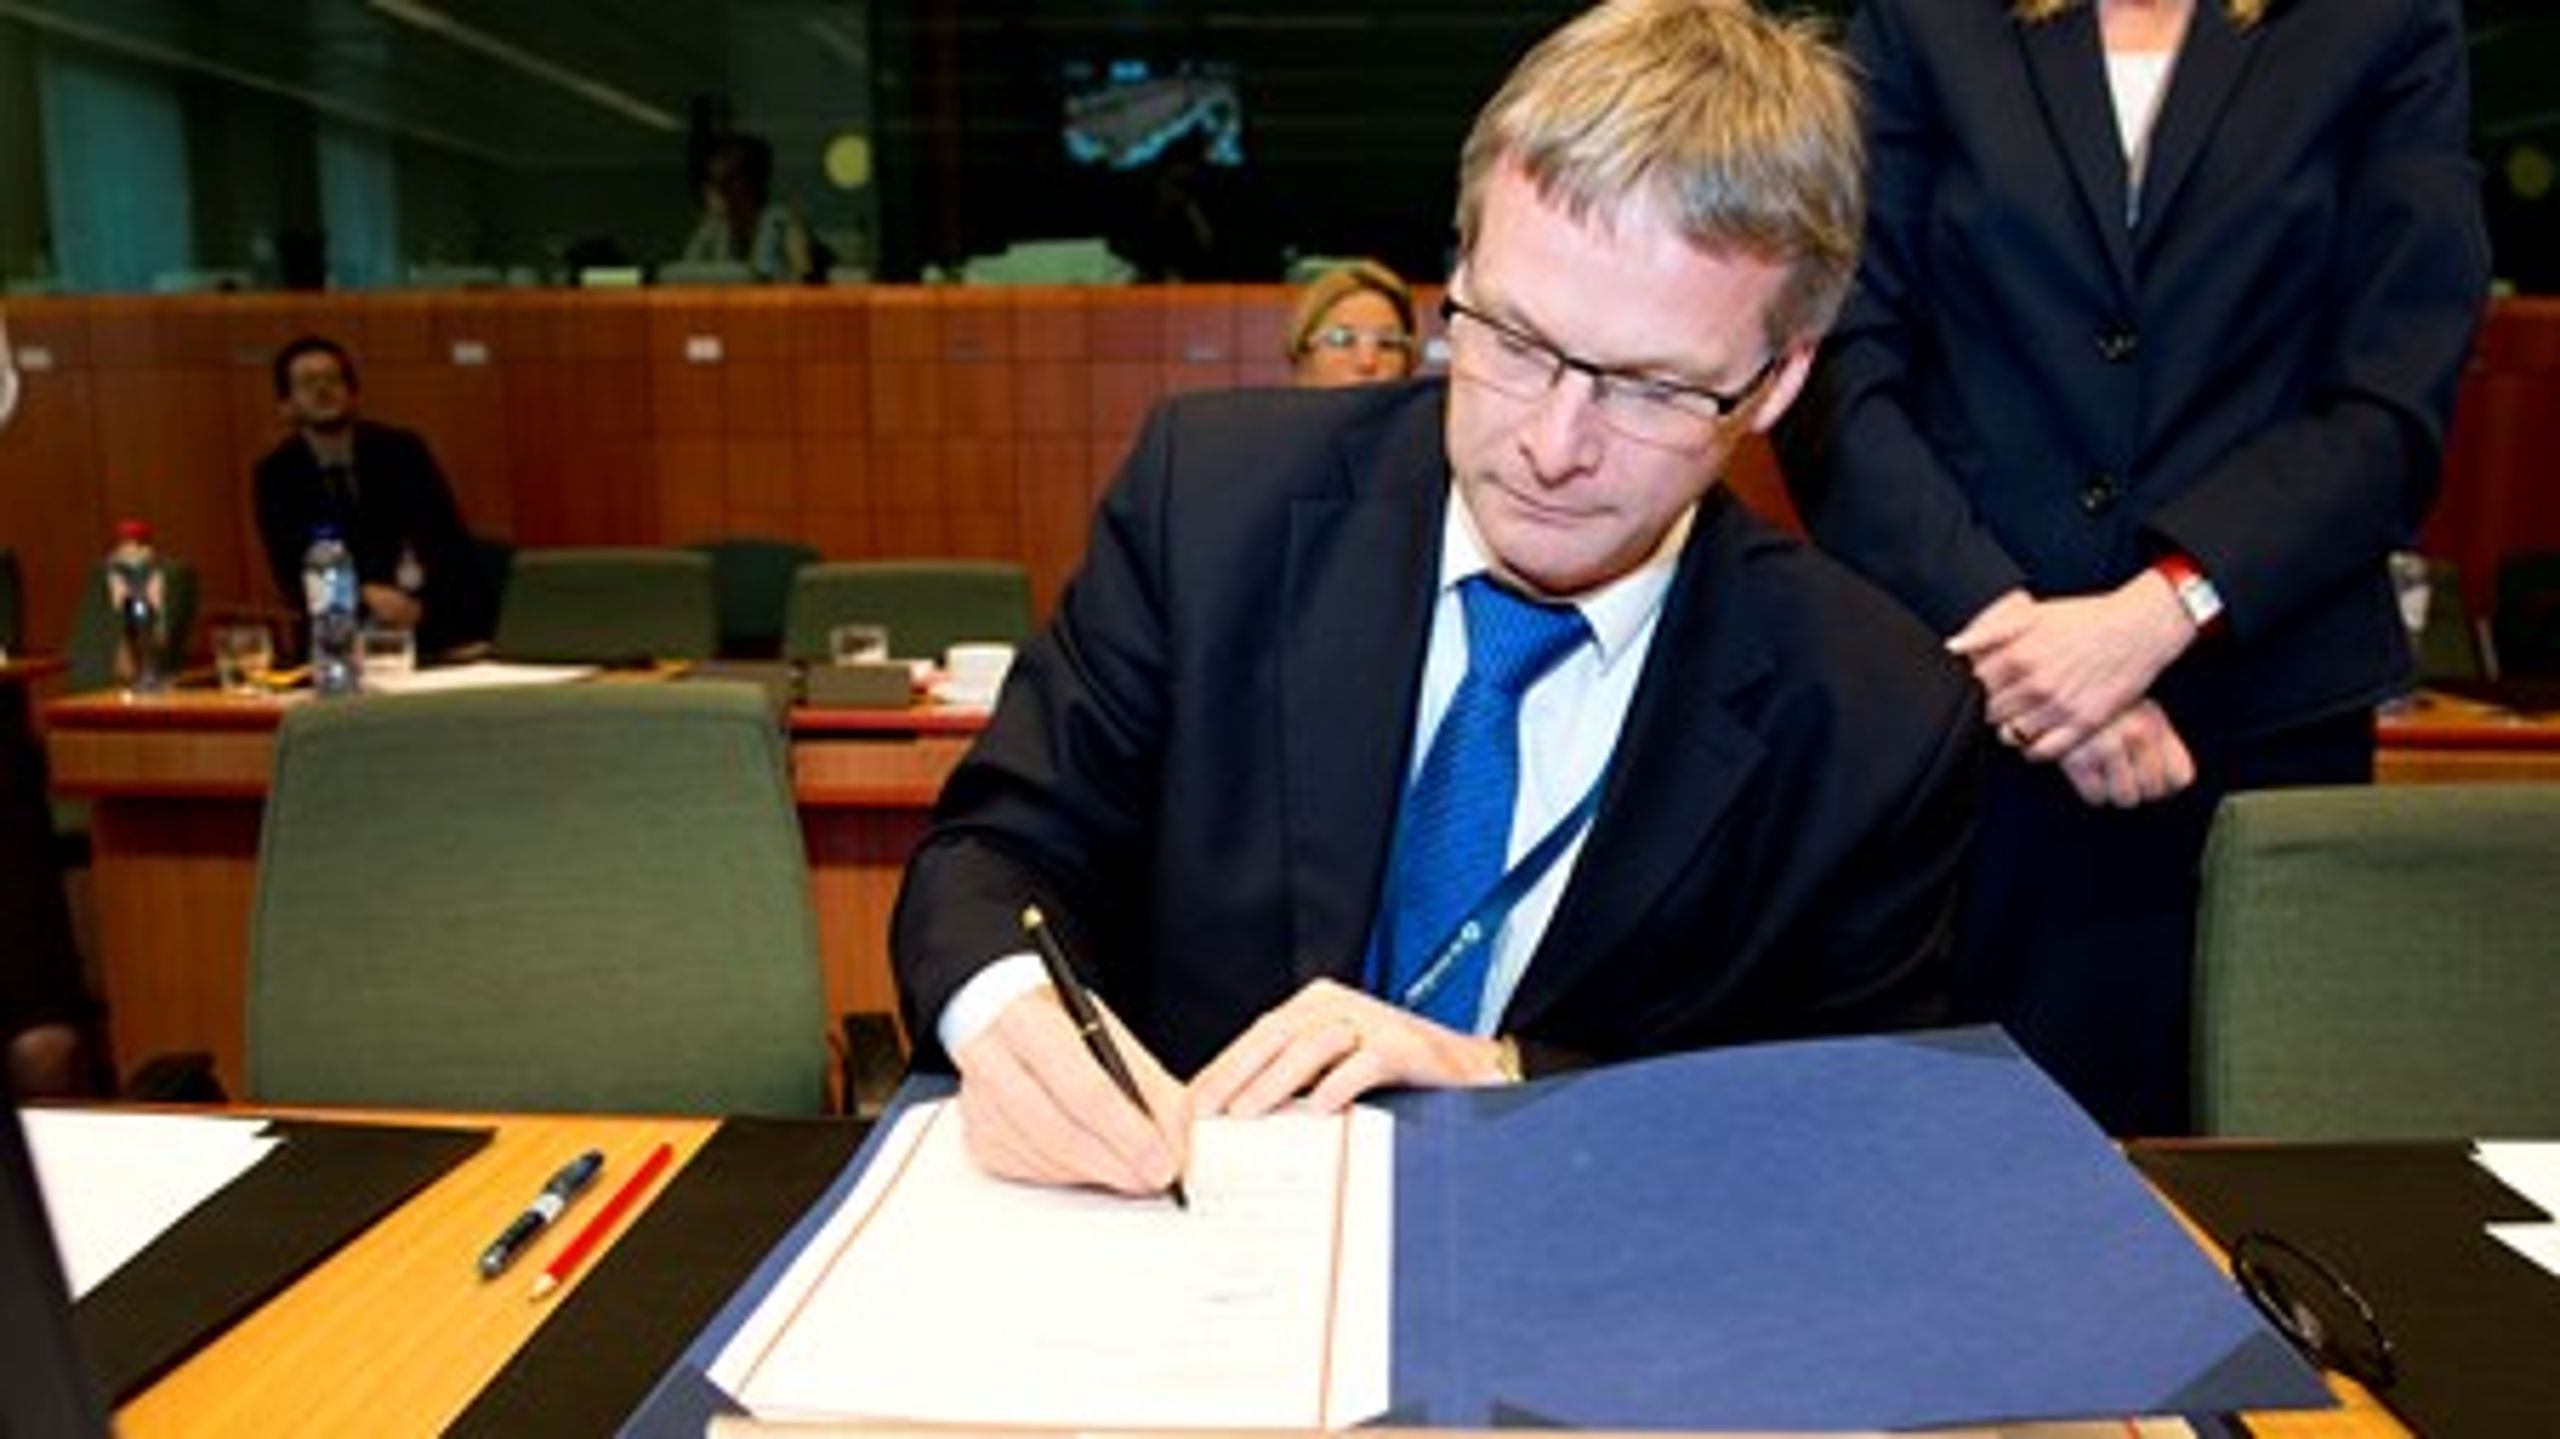 Den danske&nbsp;EU-ambassadør Jeppe Tranholm-Mikkelsen skriver under på en EU-aftale på&nbsp;Danmarks vegne. Det er det slut med nu, når han skifter job og bliver den nye generalsekretær i Ministerrådet.